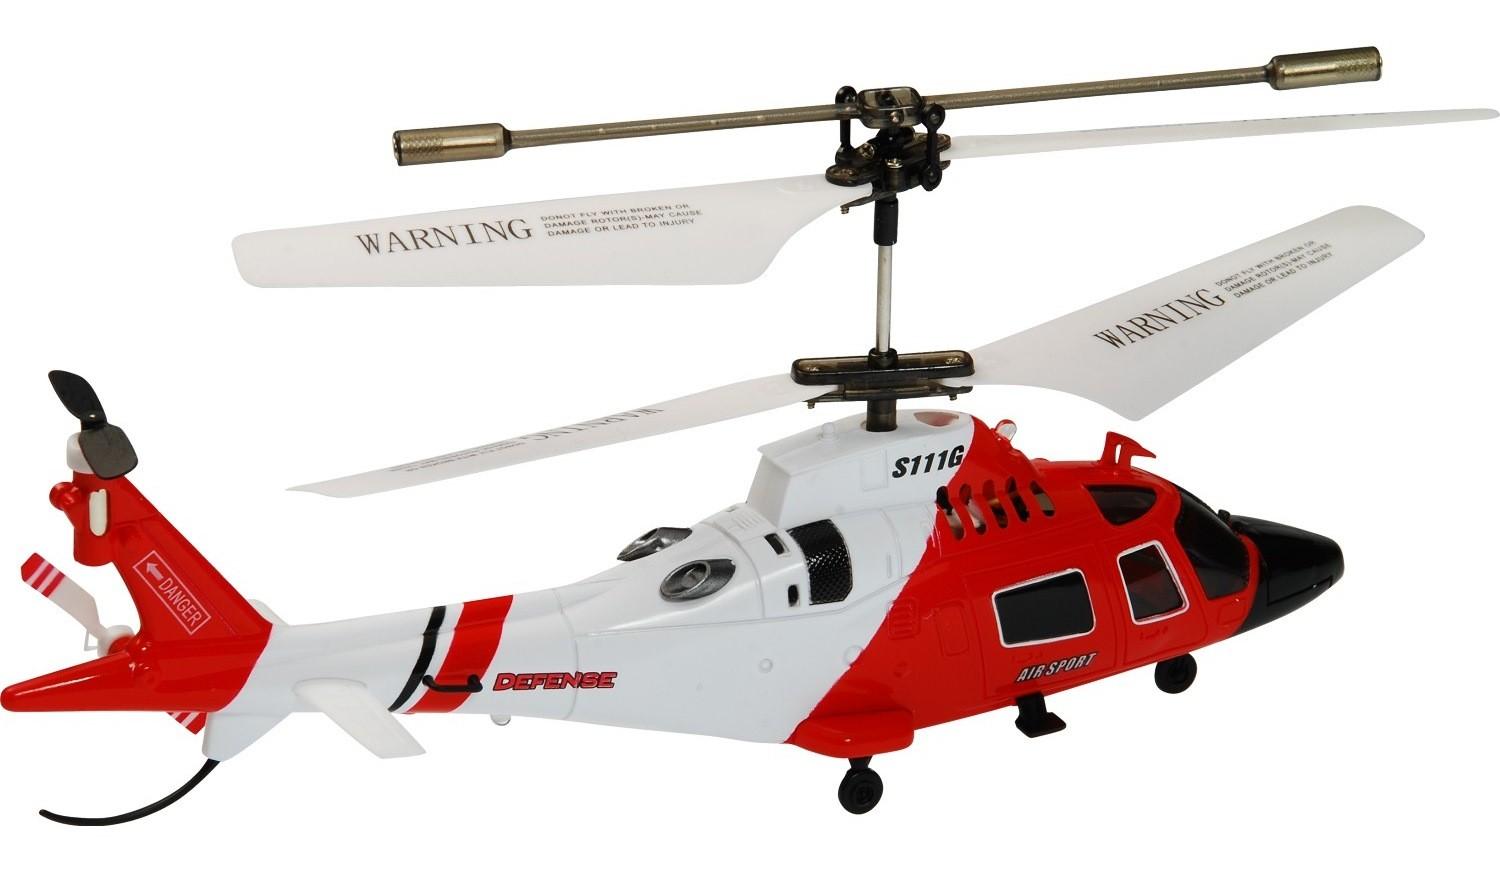 Большой вертолет на радиоуправлении. Вертолет Syma s111g. Вертолет Syma Marines (s111g). Вертолет на радиоуправлении Syma s111g. Радиоуправляемый вертолет Syma s111g с гироскопом.